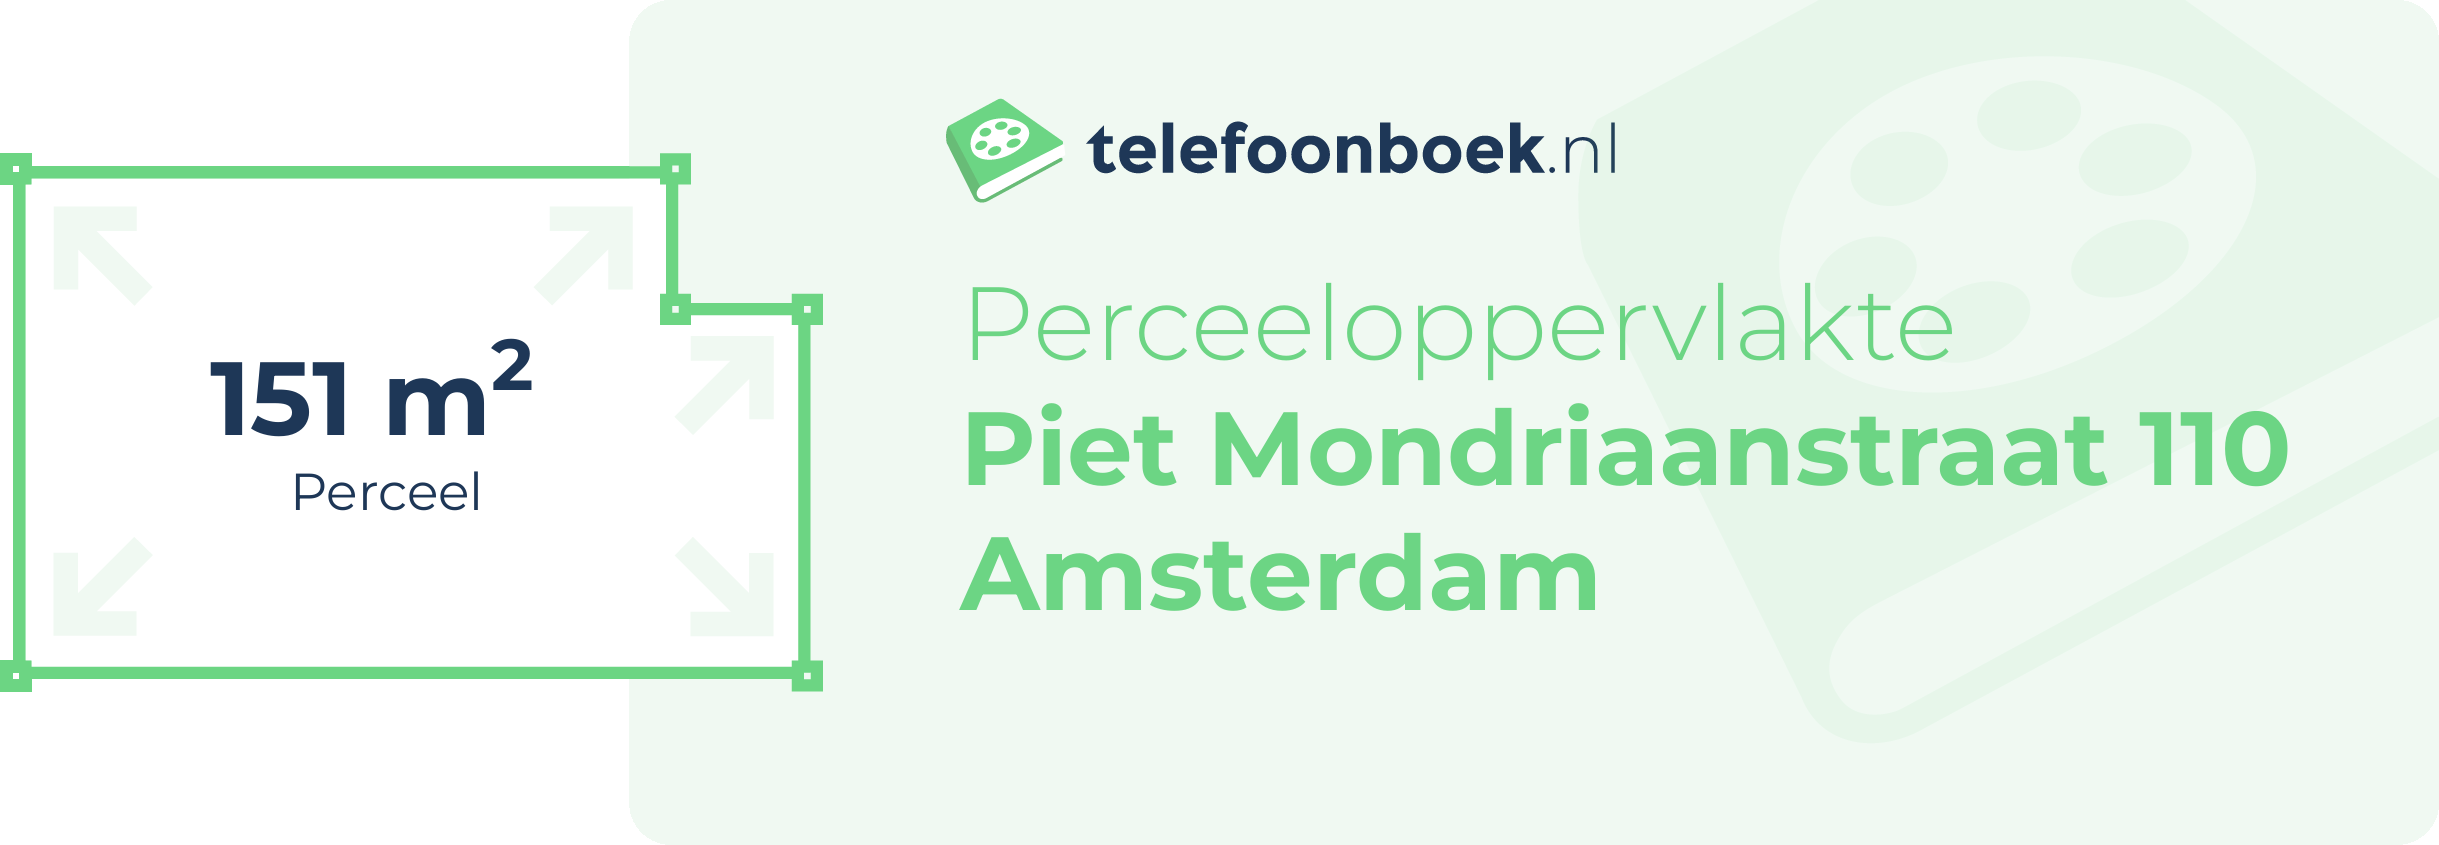 Perceeloppervlakte Piet Mondriaanstraat 110 Amsterdam